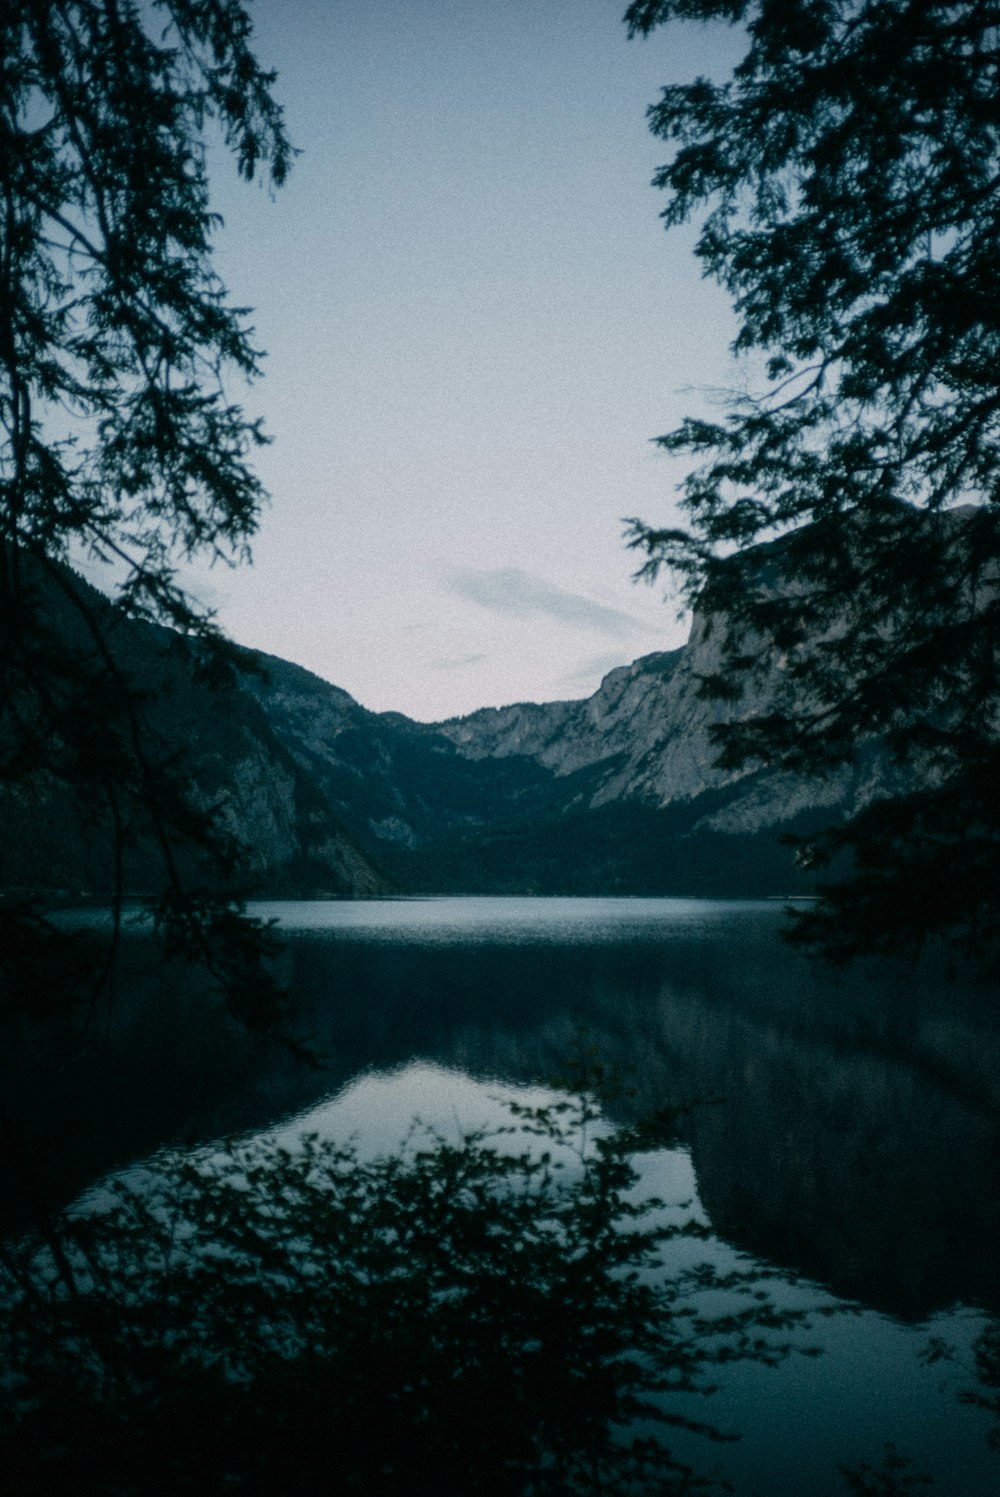 lago circondato da alberi e montagne